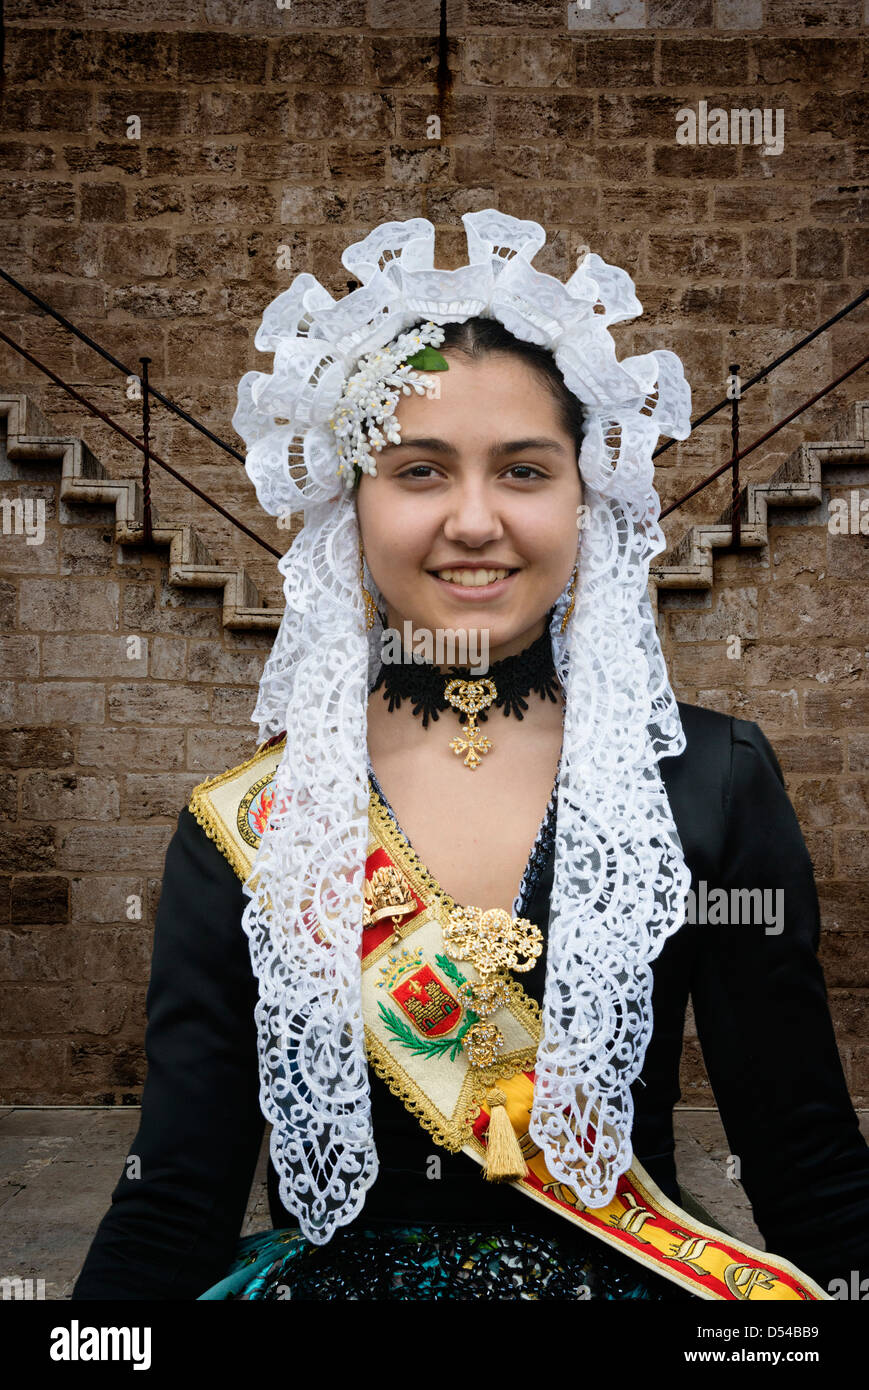 Jeune fille espagnole en costume traditionnel y compris voile mantille dentelle ou un châle pendant ou las Fallas à Valence Espagne festival Falles Banque D'Images